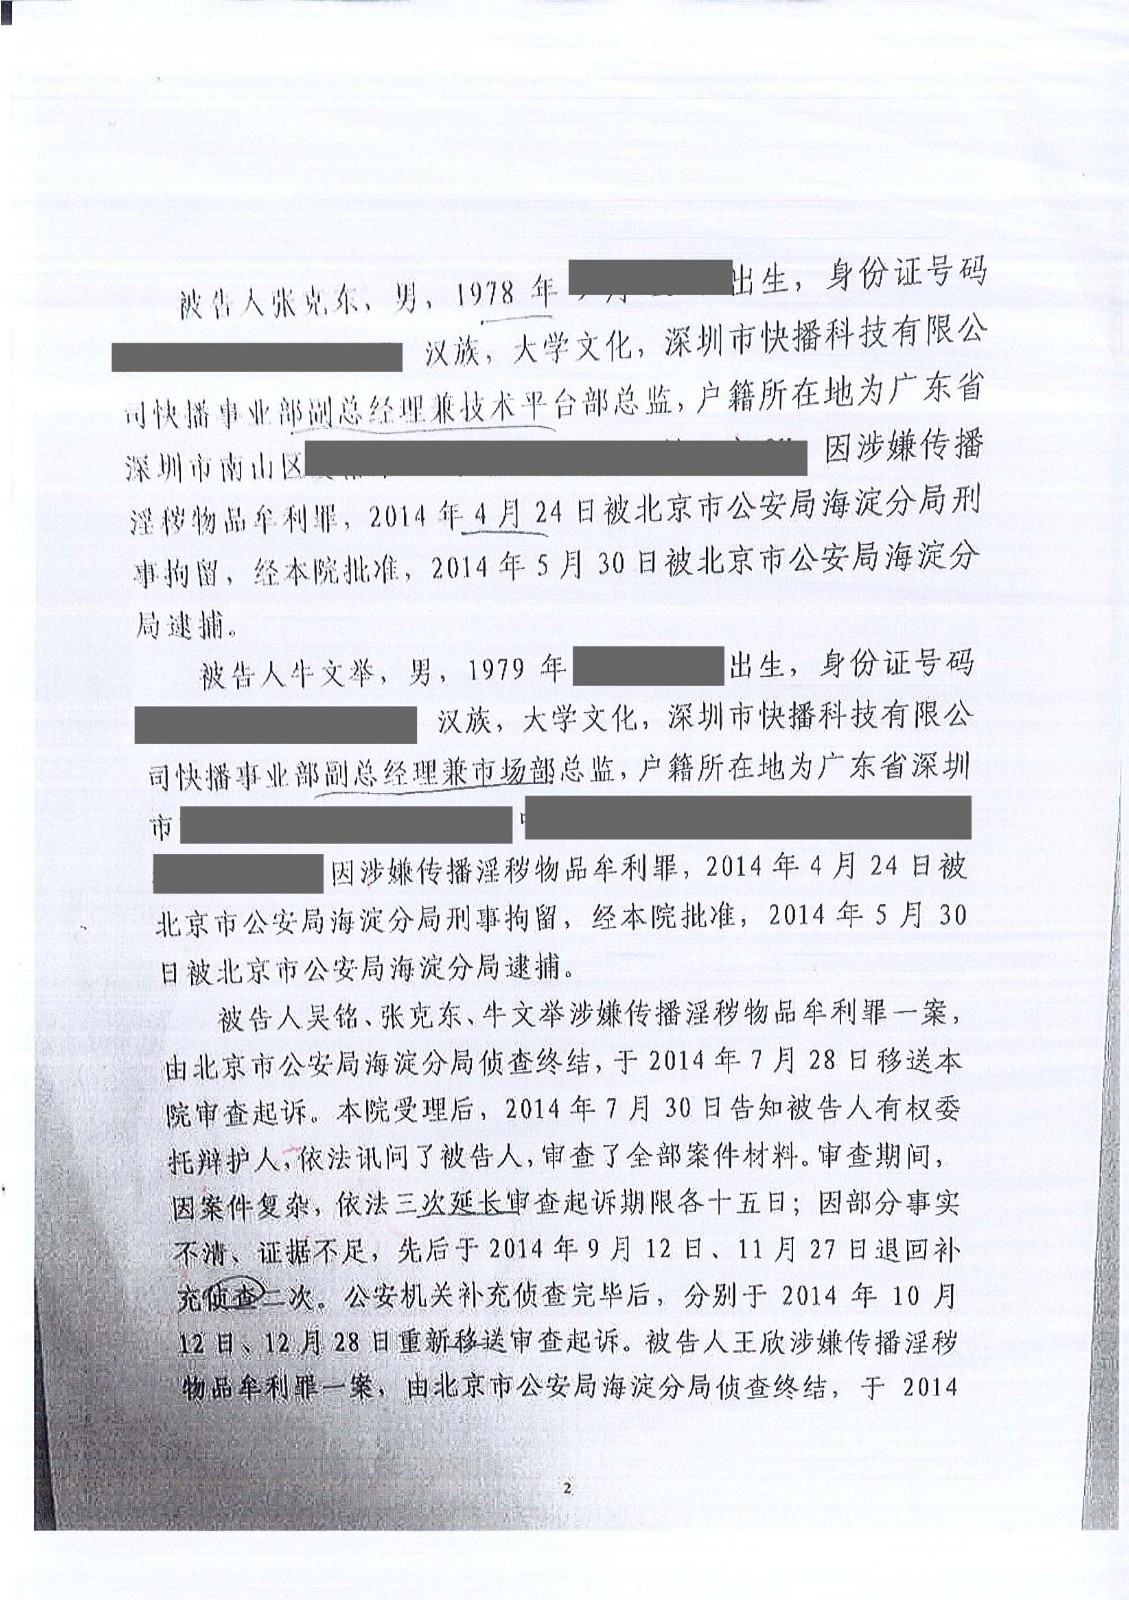 深圳快播公司起诉书-网站2.jpg